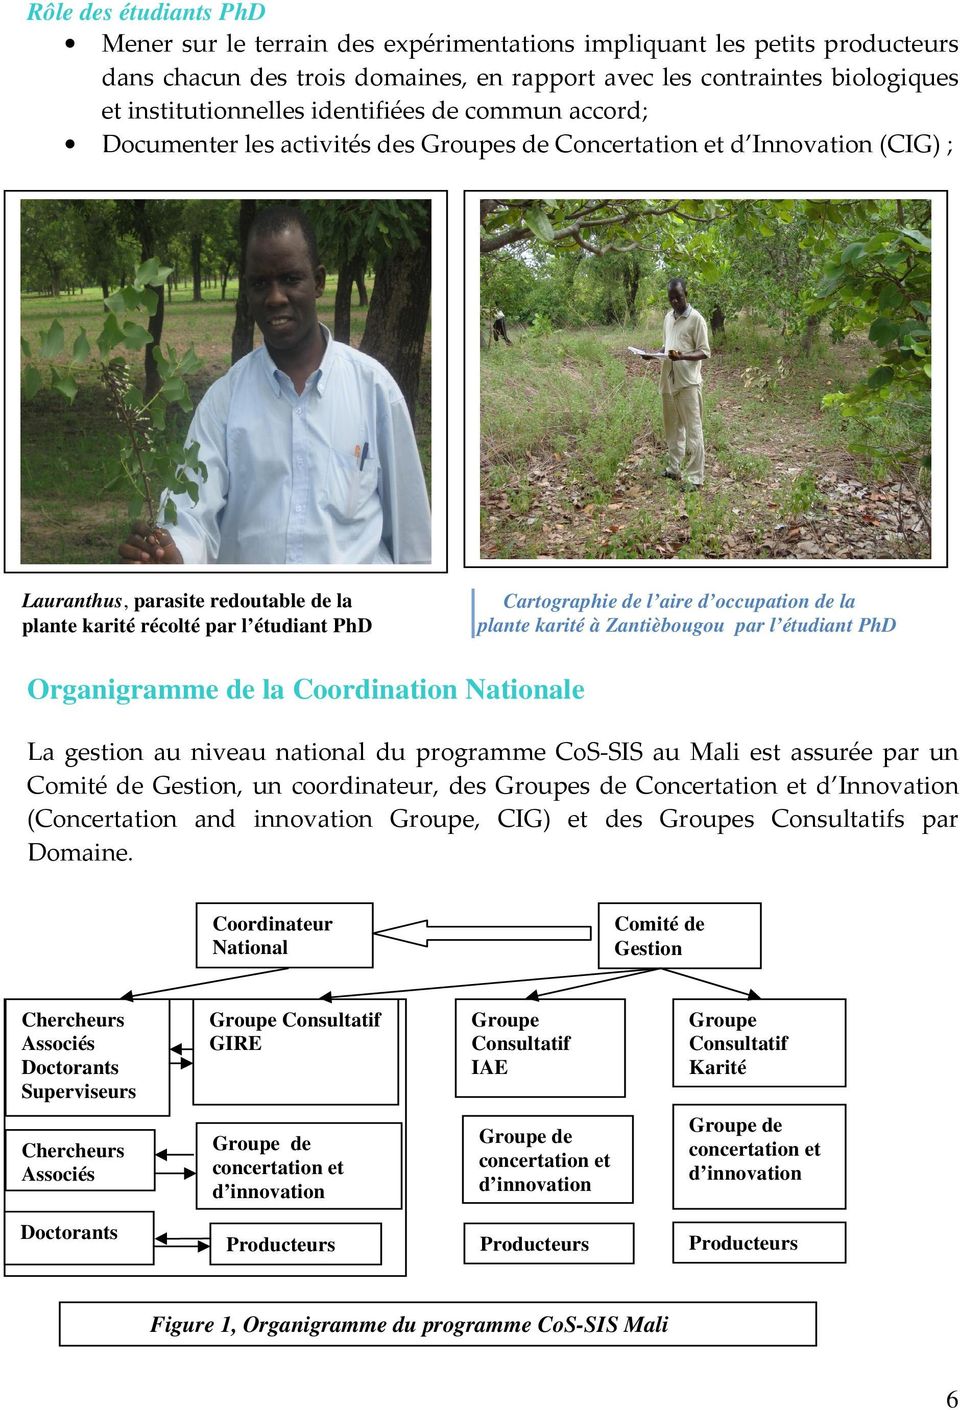 de l aire d occupation de la plante karité à Zantièbougou par l étudiant PhD Organigramme de la Coordination Nationale La gestion au niveau national du programme CoS-SIS au Mali est assurée par un